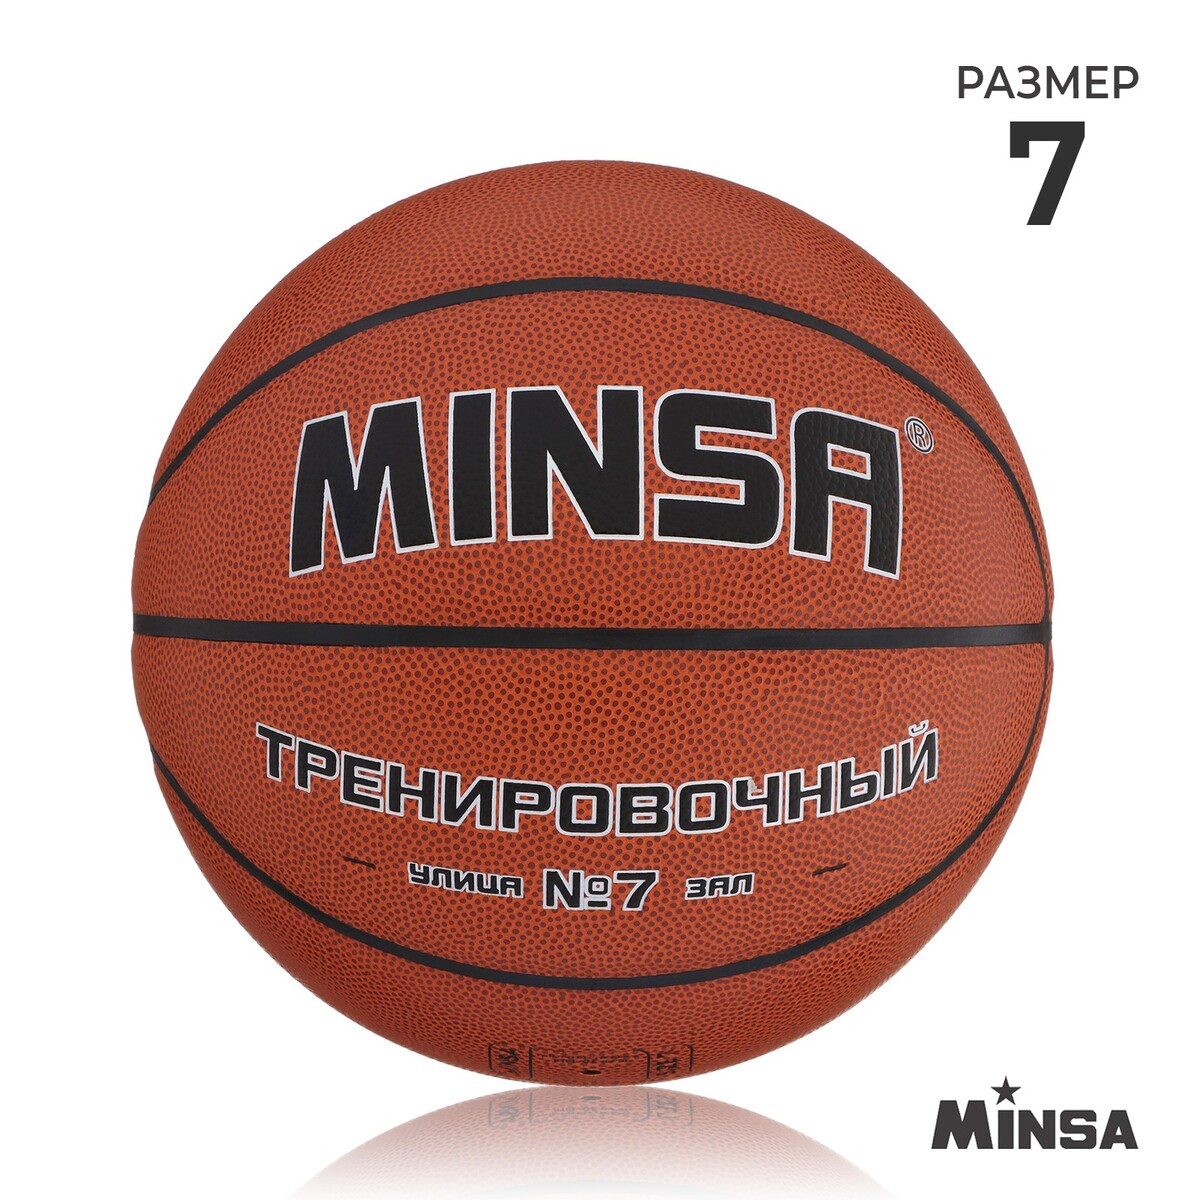 Баскетбольный мяч minsa, тренировочный, pu, клееный, 8 панелей, р. 7 баскетбольный мяч minsa тренировочный pu клееный 8 панелей р 6